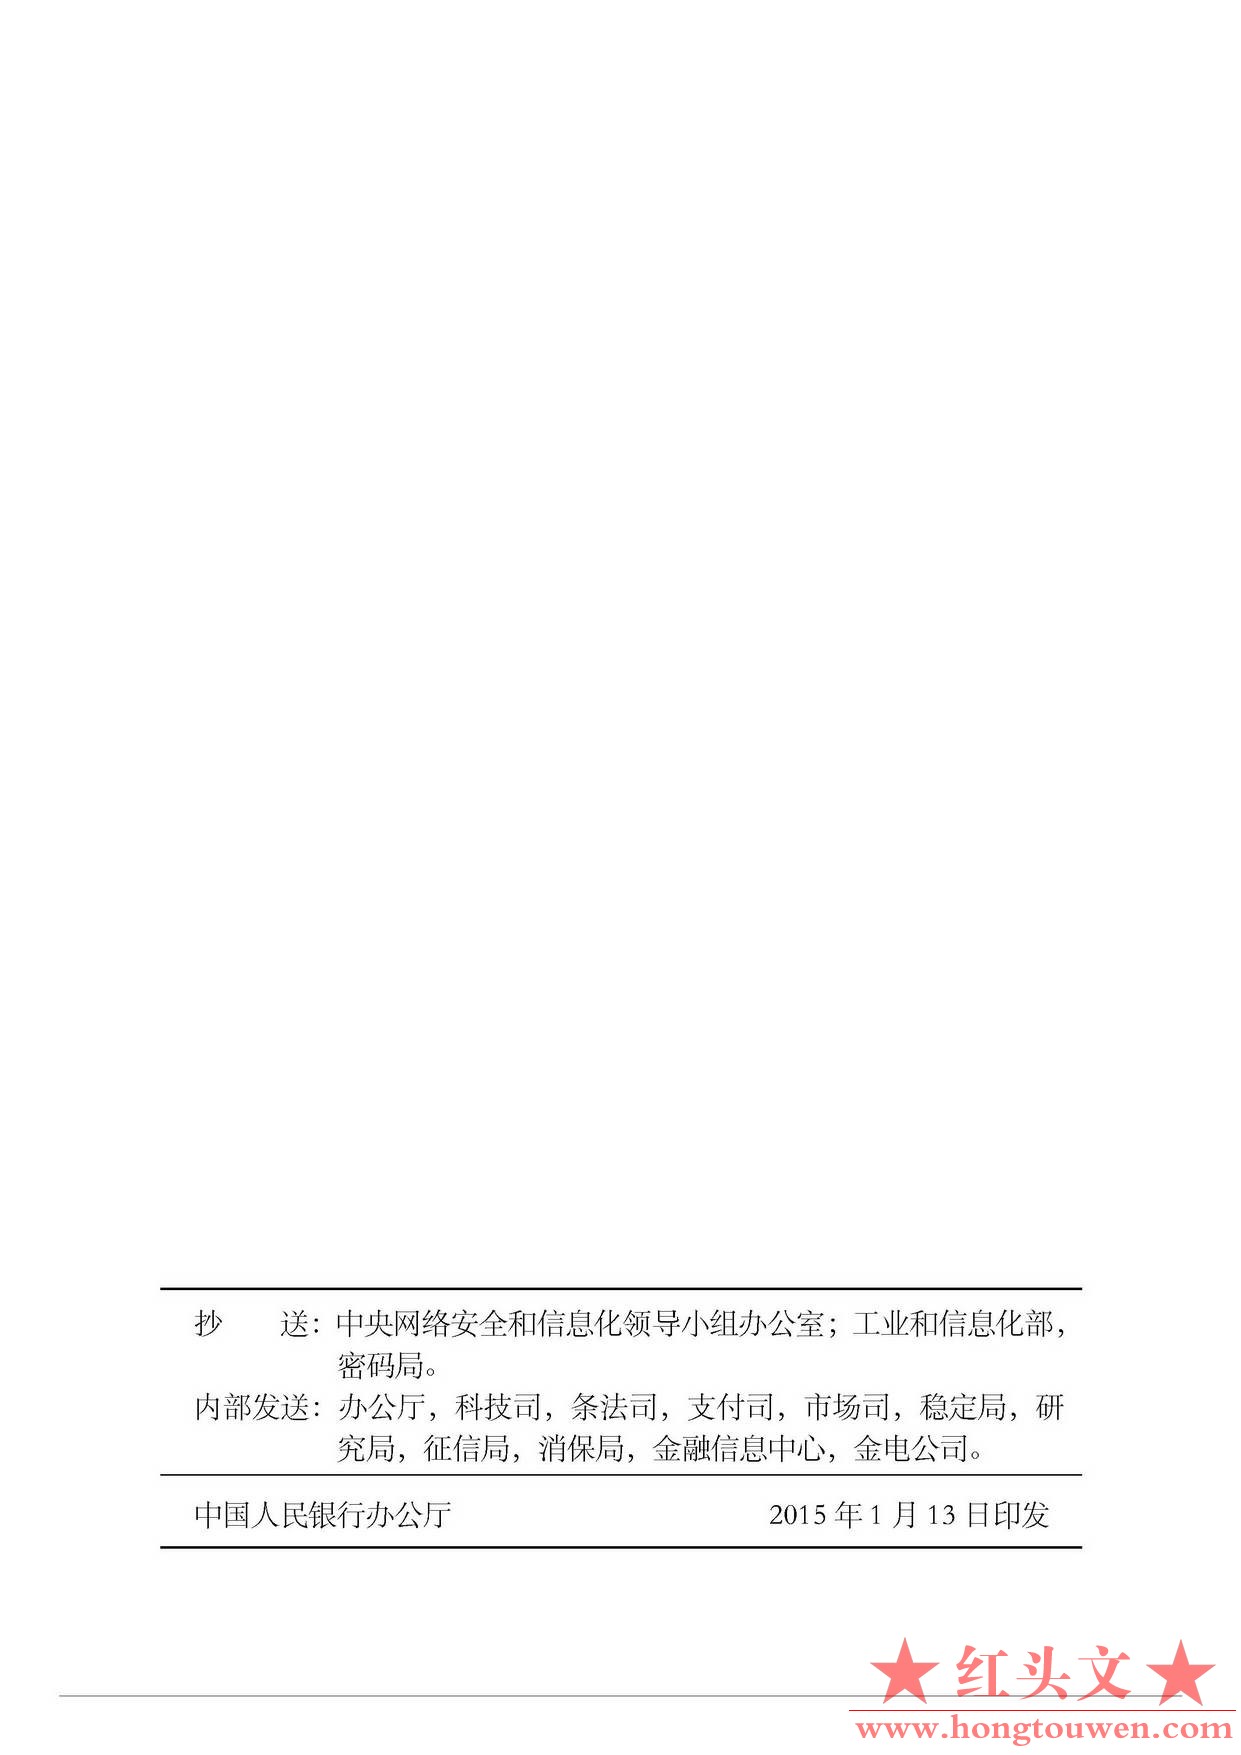 银发[2015]11号-中国人民银行关于推动移动金融技术创新健康发展的指导意见_页面_6.jpg.jpg